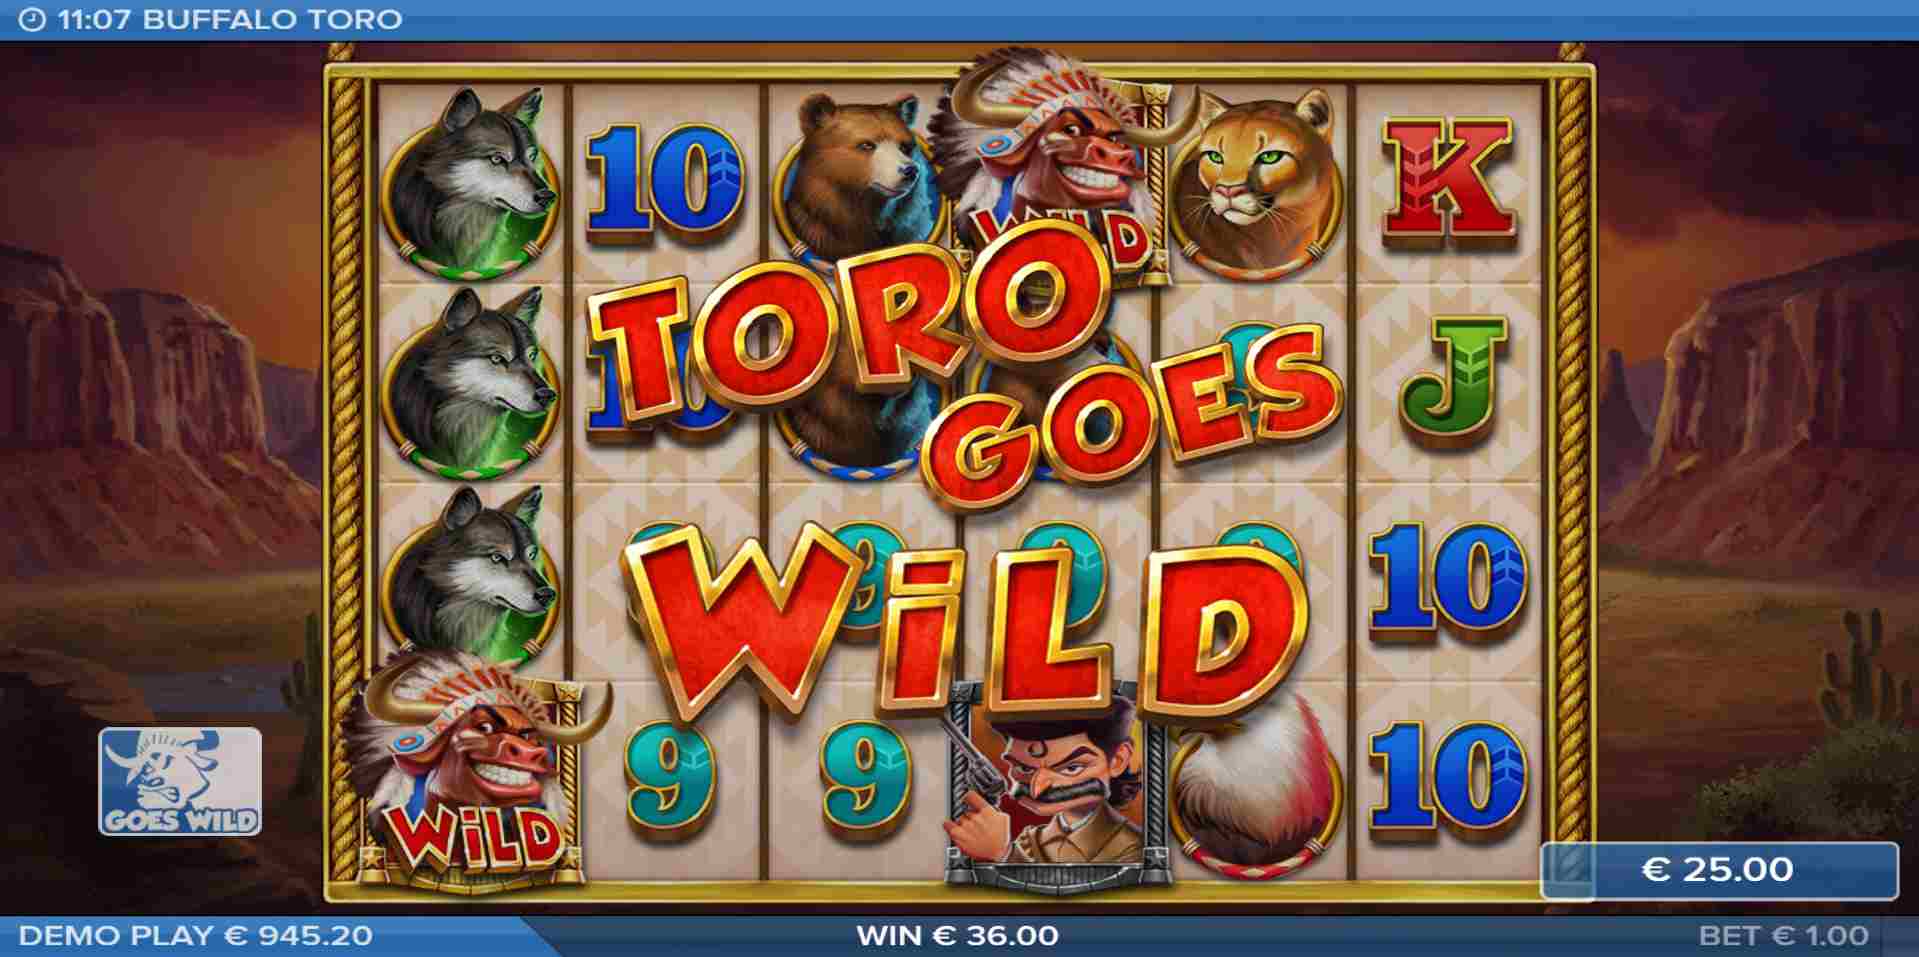 Buffalo Toro - Toro Goes Wild Feature